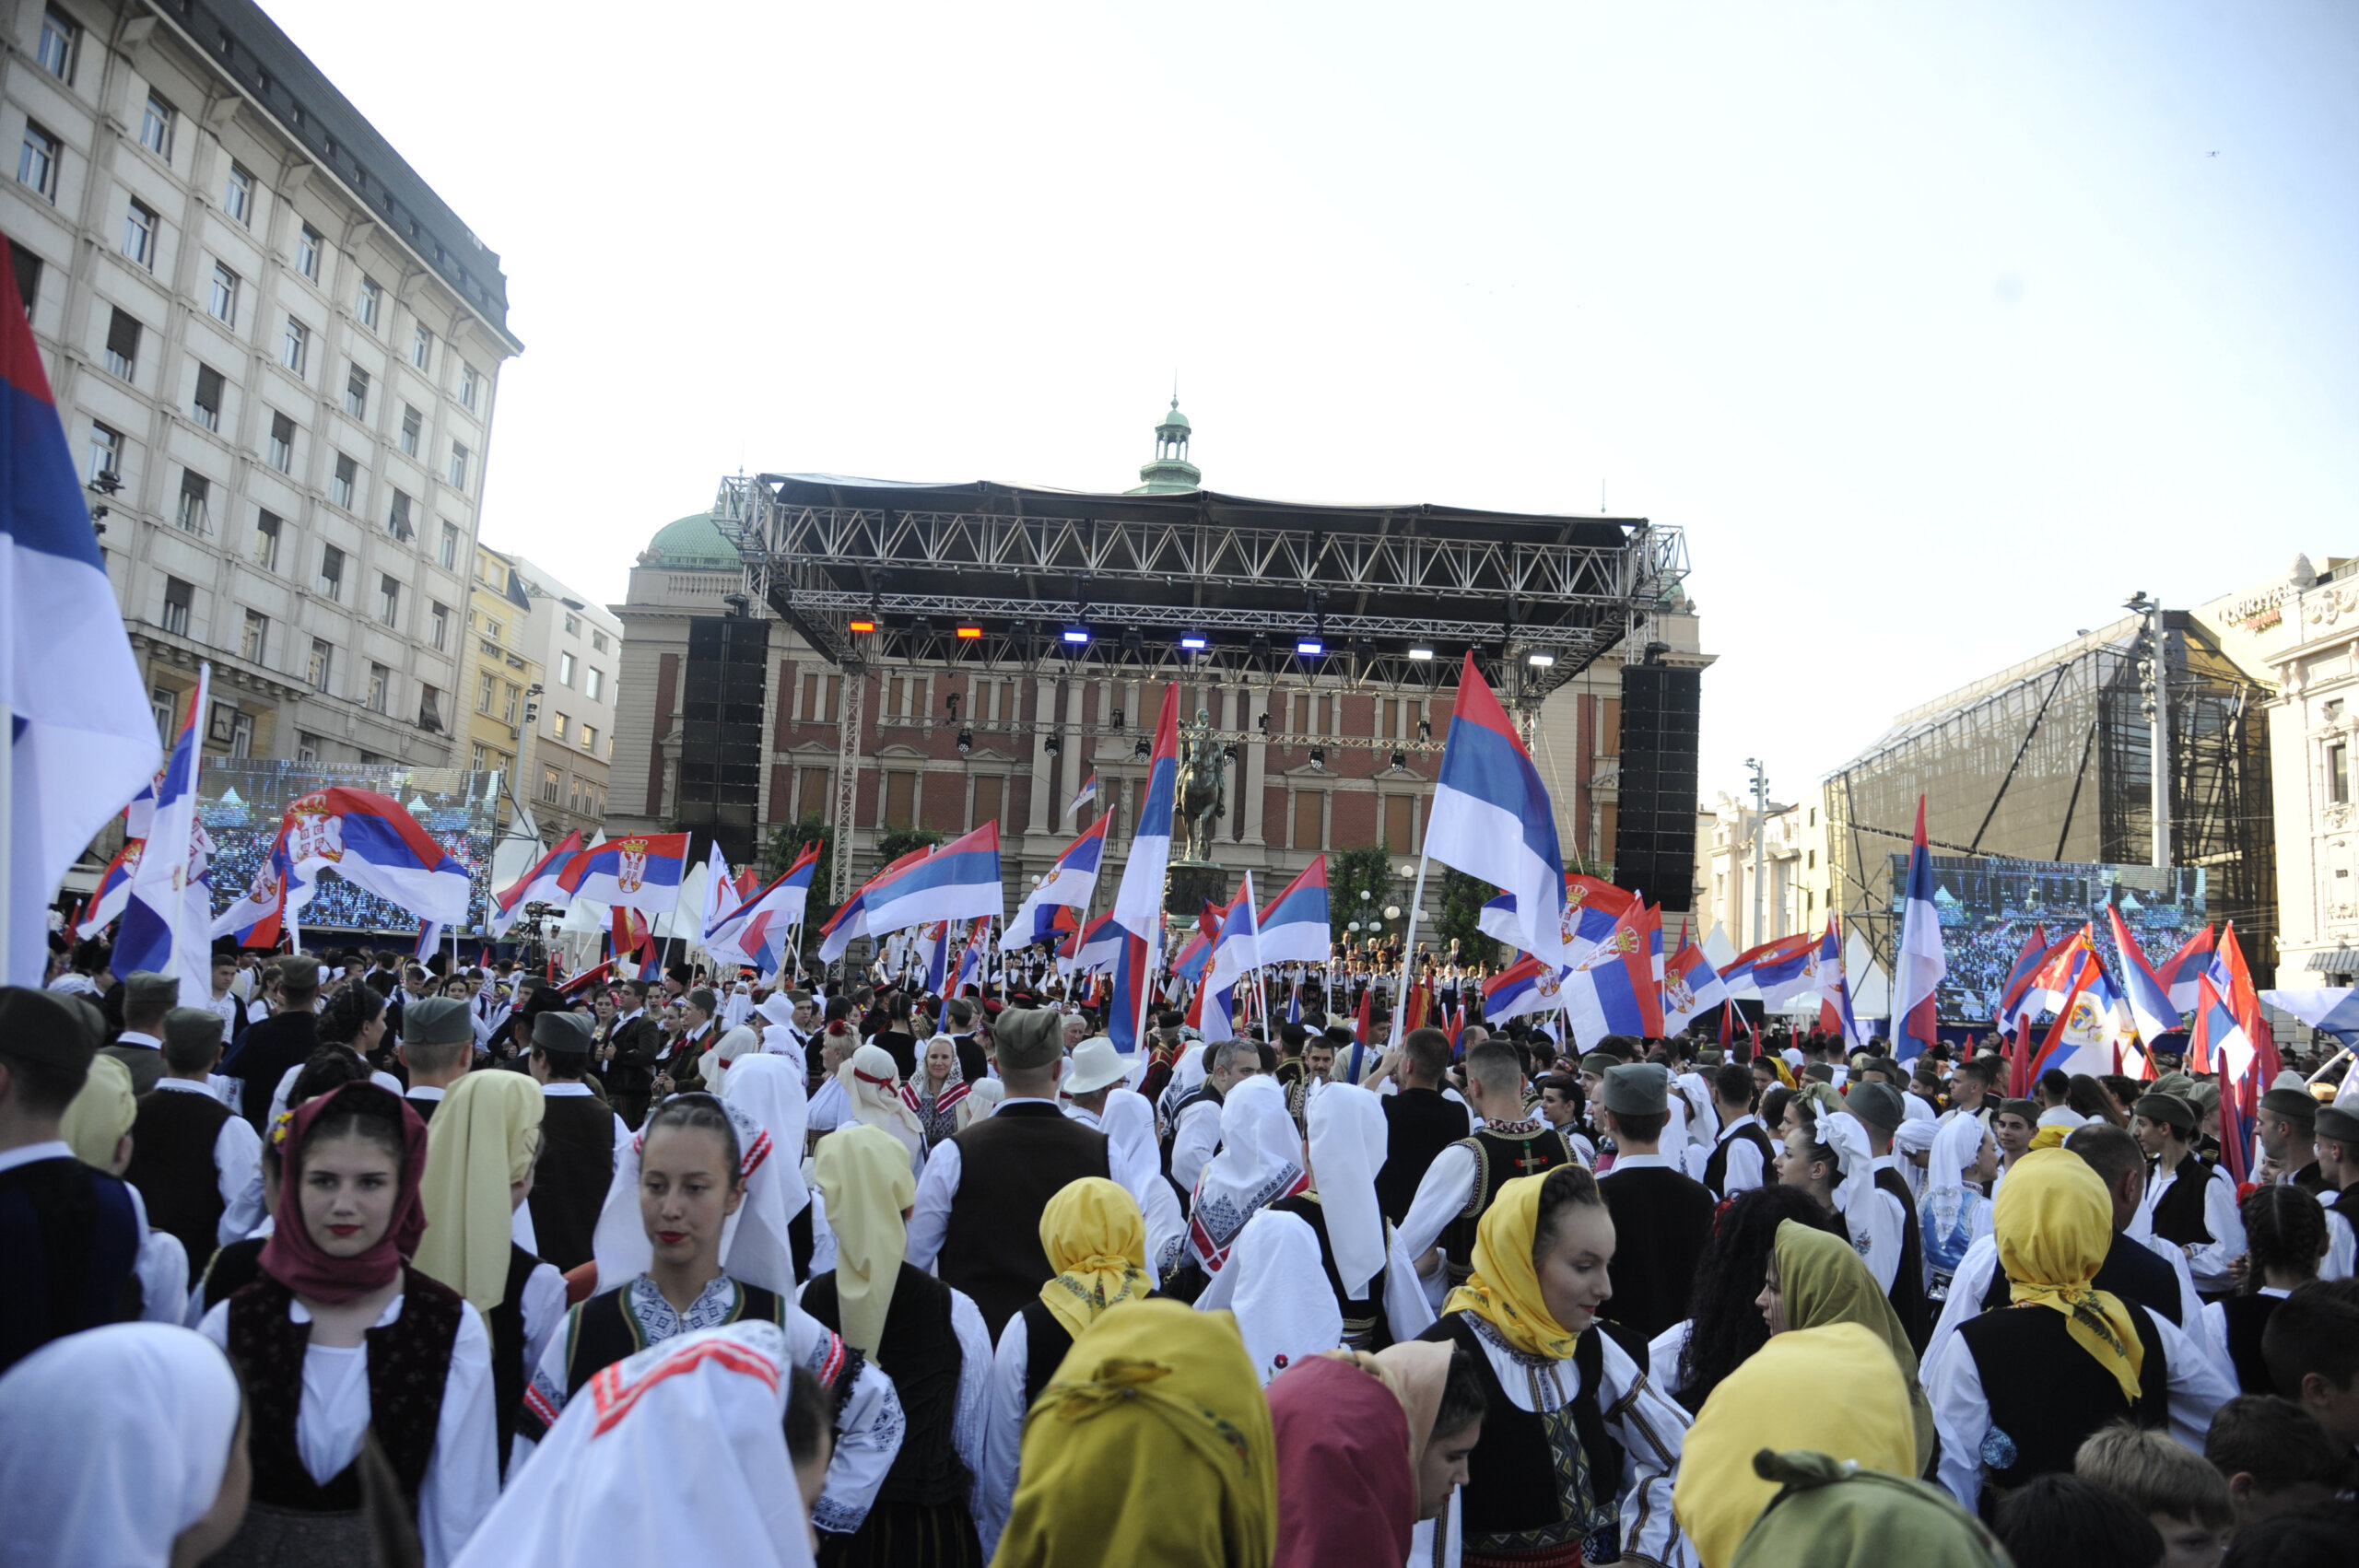 (FOTO) Kako je izgledala manifestacija "Jedan narod, jedan sabor - Srbija i Srpska" na Trgu republike u fotografijama? 7